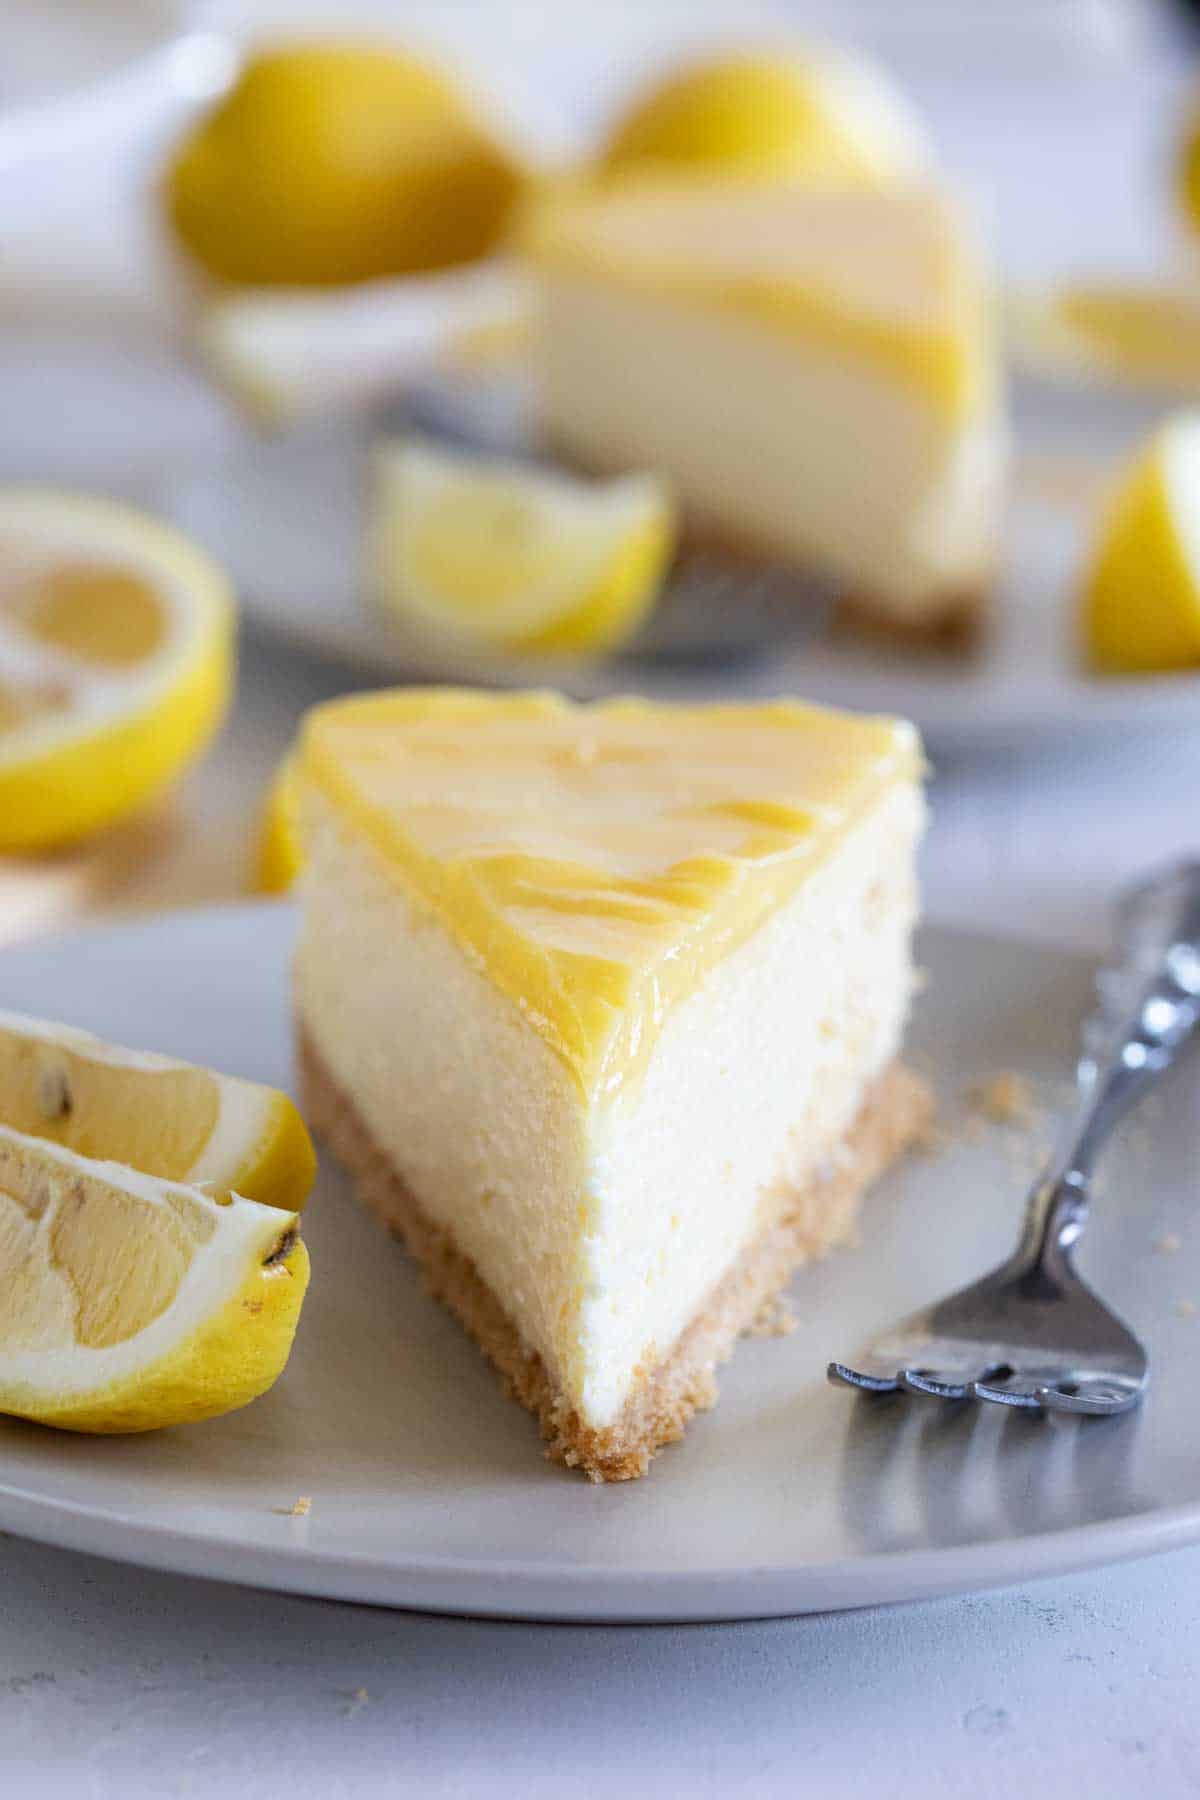 https://www.tasteandtellblog.com/wp-content/uploads/2022/03/Lemon-Cheesecake-10.jpg